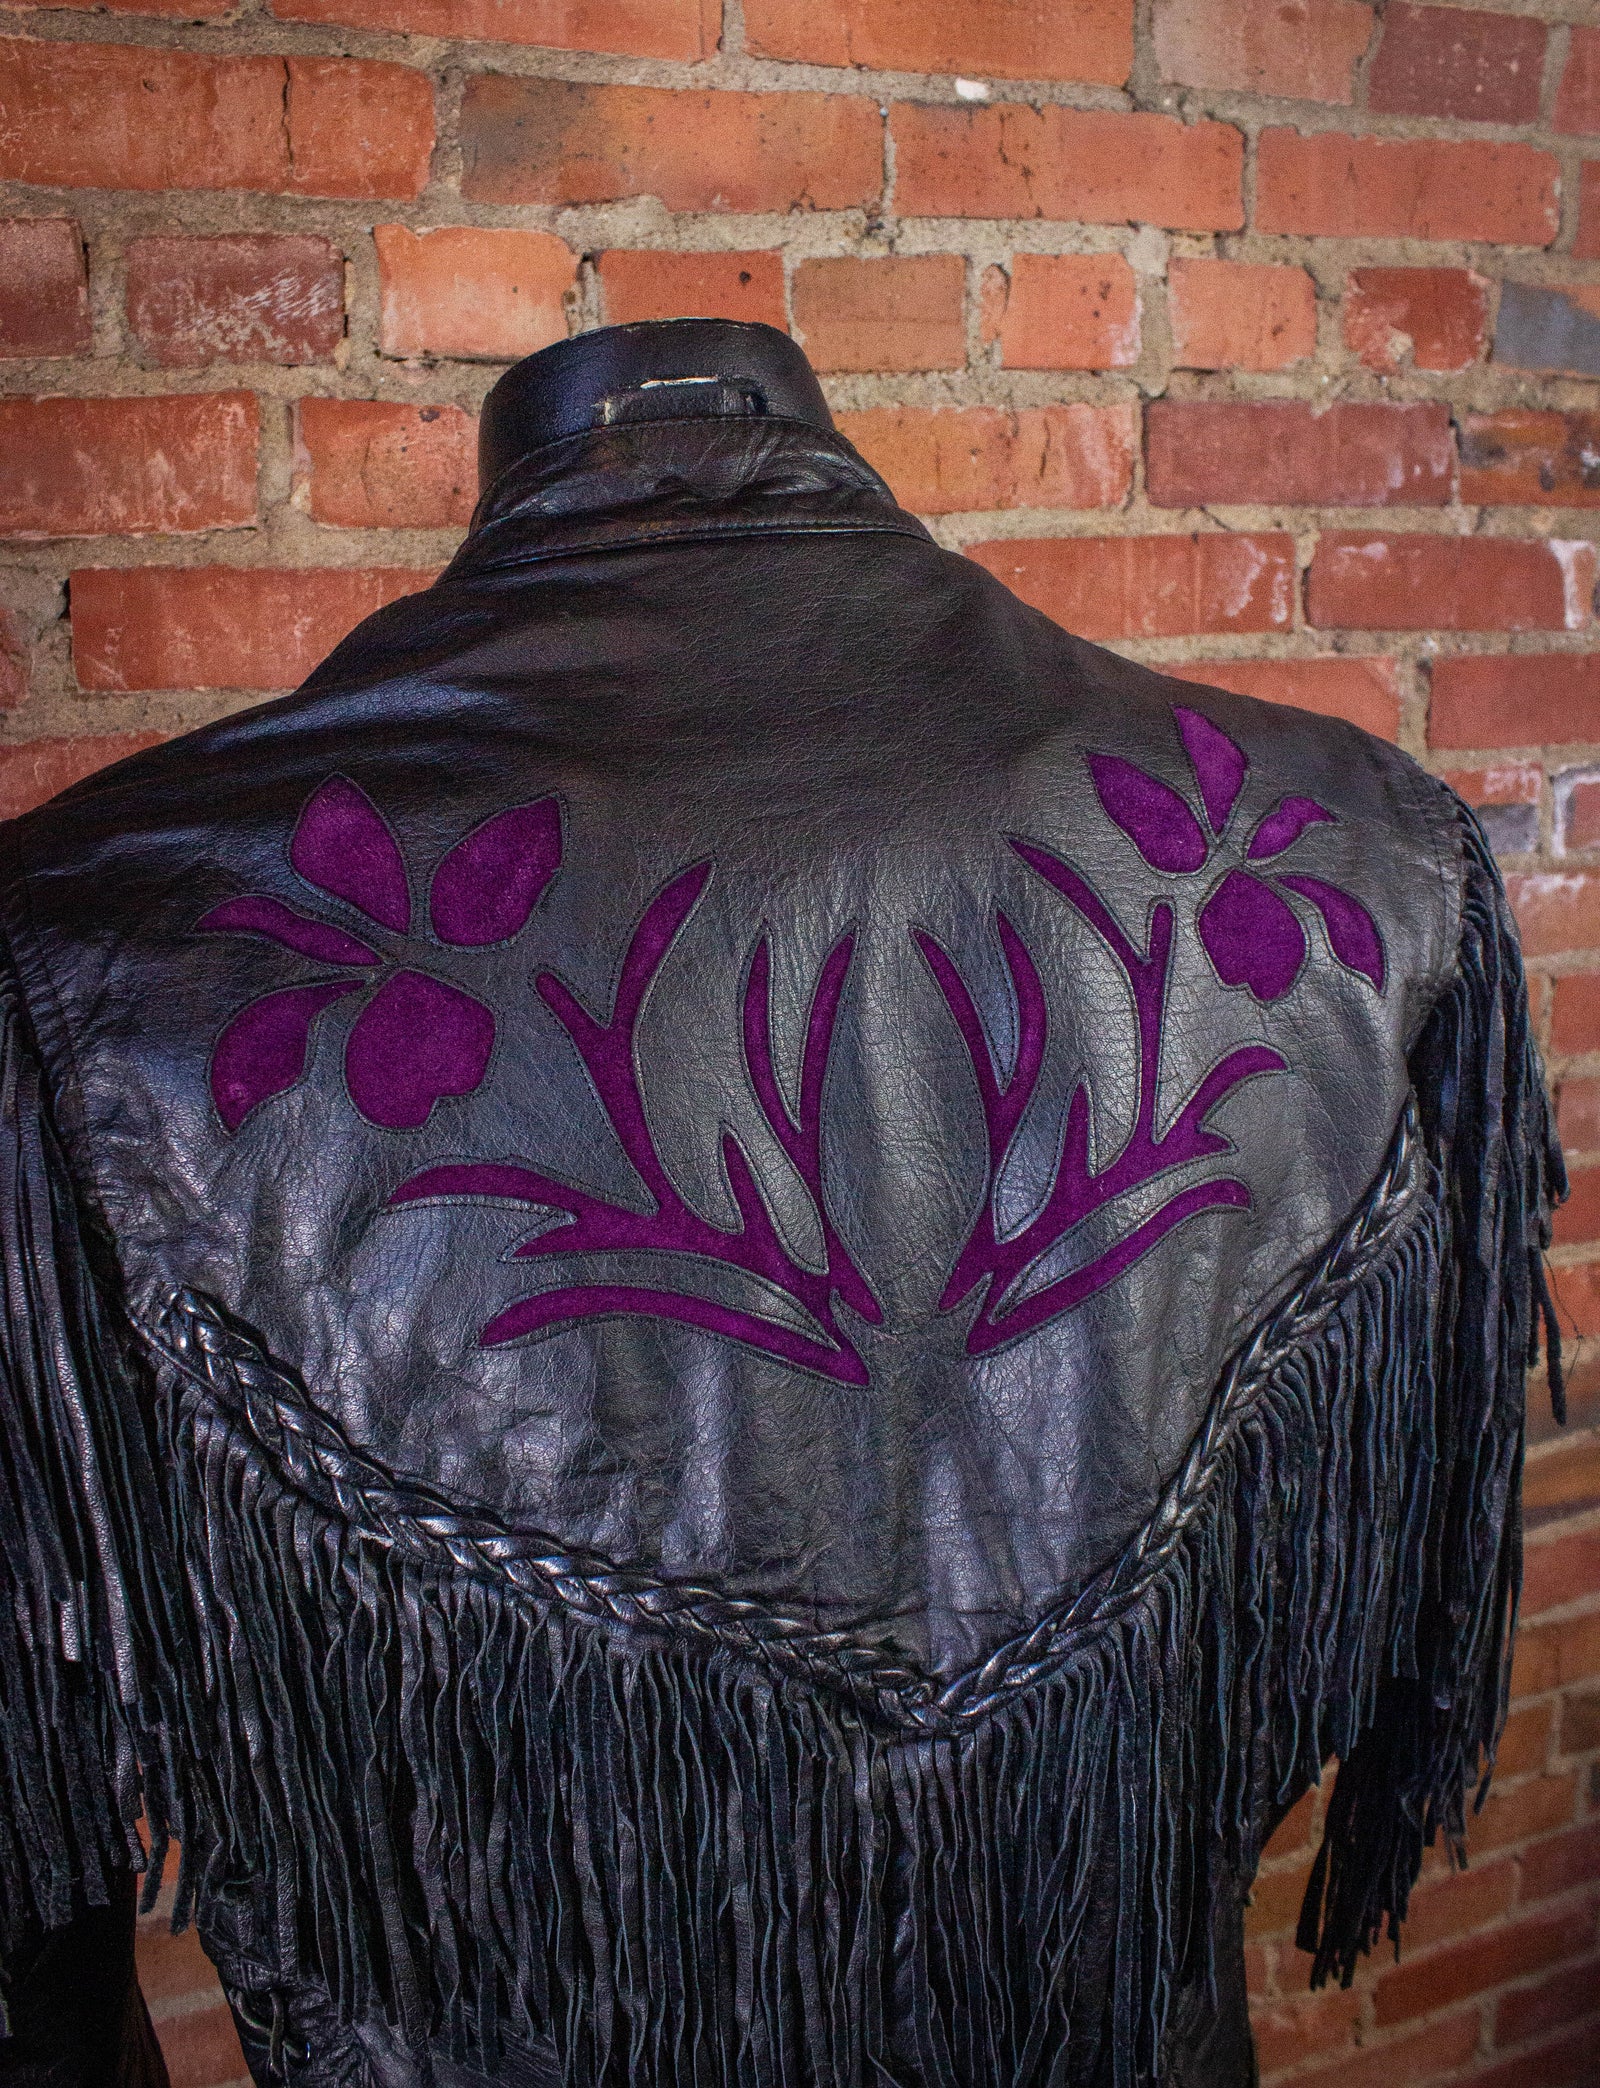 Vintage Rose Fringe Leather Jacket Black and Purple Medium